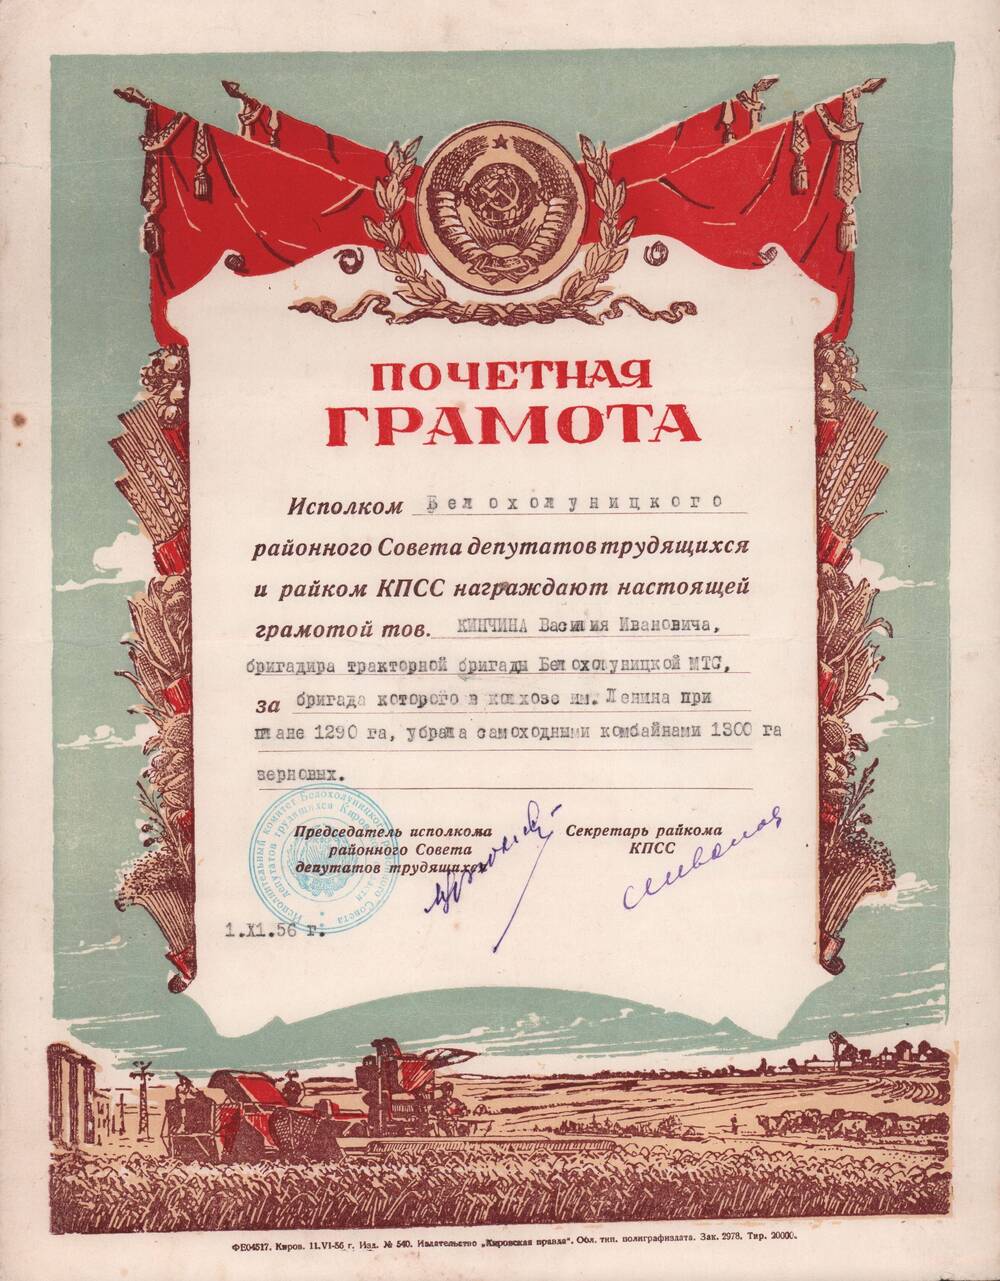 Почётная грамота  1956 года  Кинчина Василия Ивановича.